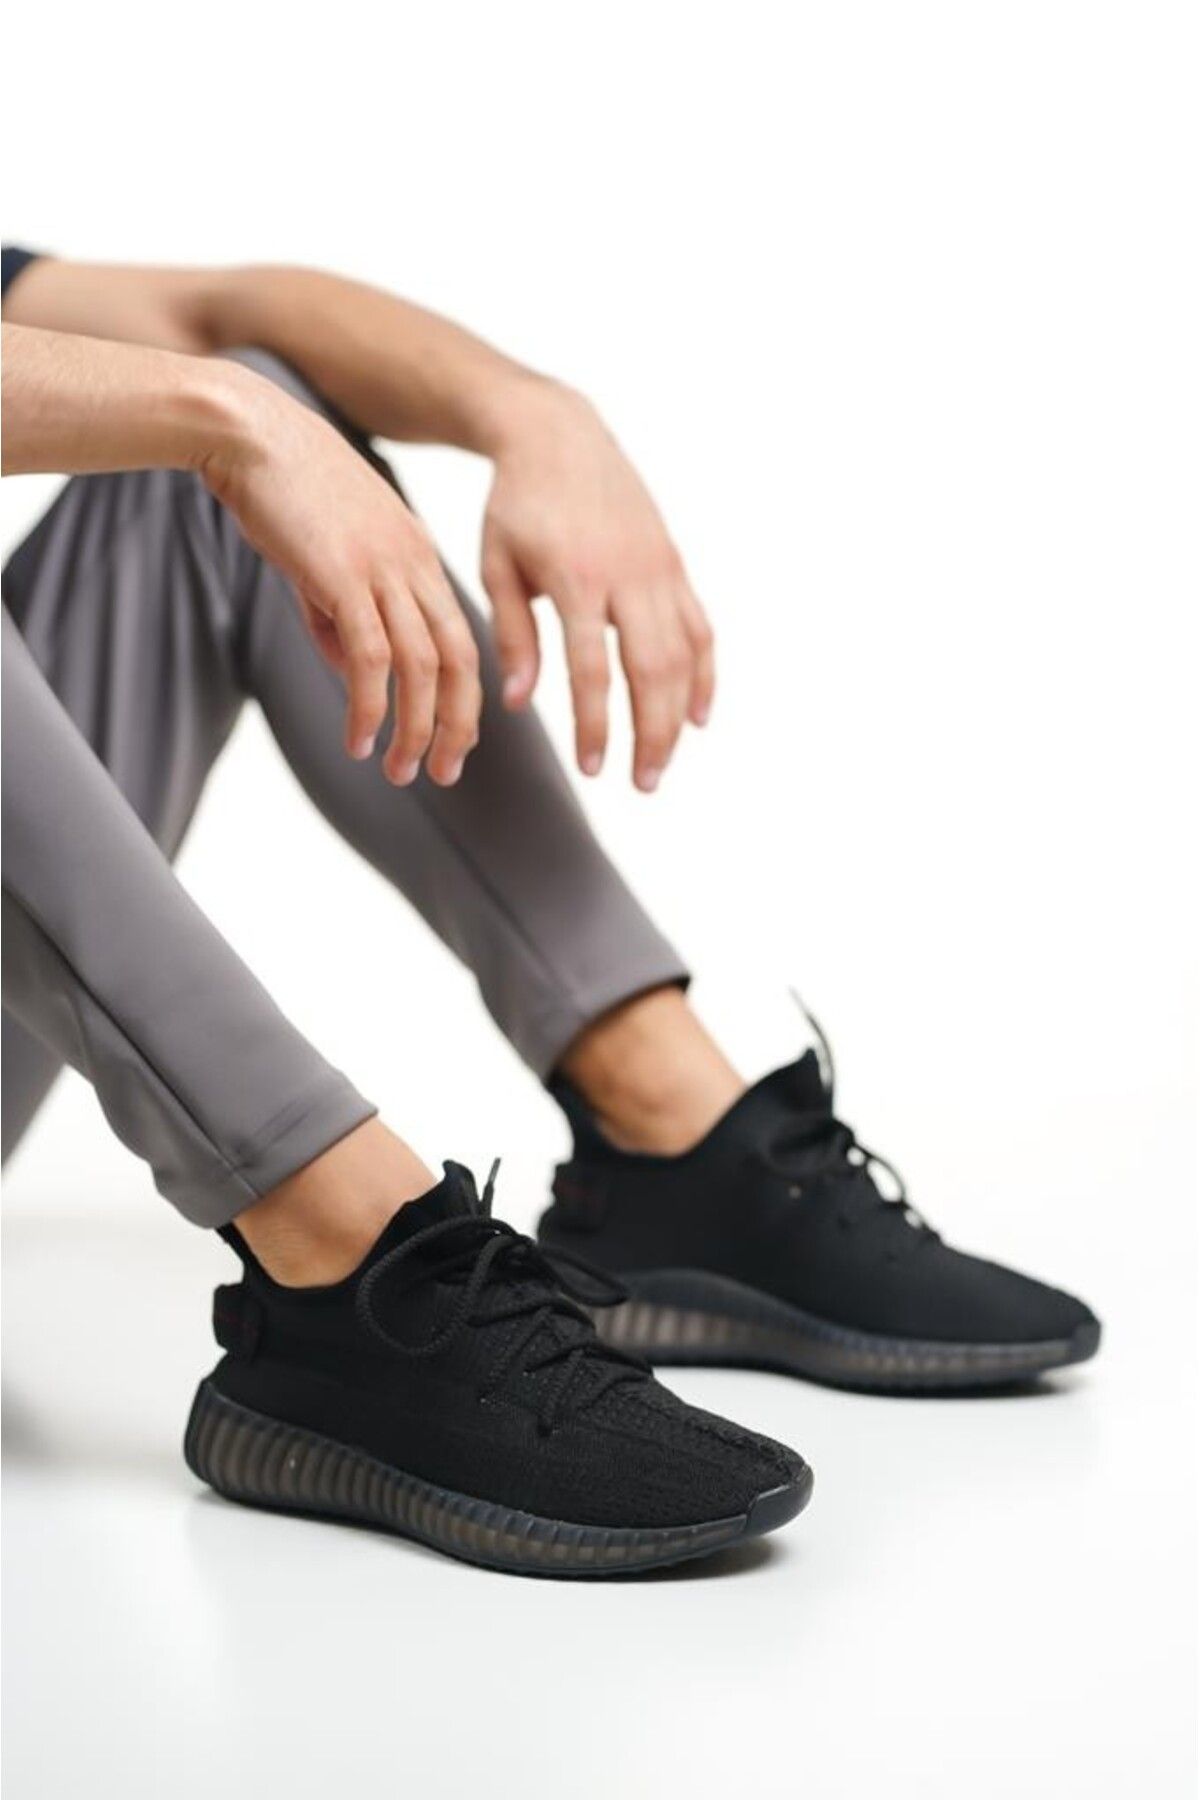 BOA BA0591 Tarz Sneakers Ithal Siyah Triko Rahat Taban Spor Ayakkabısı